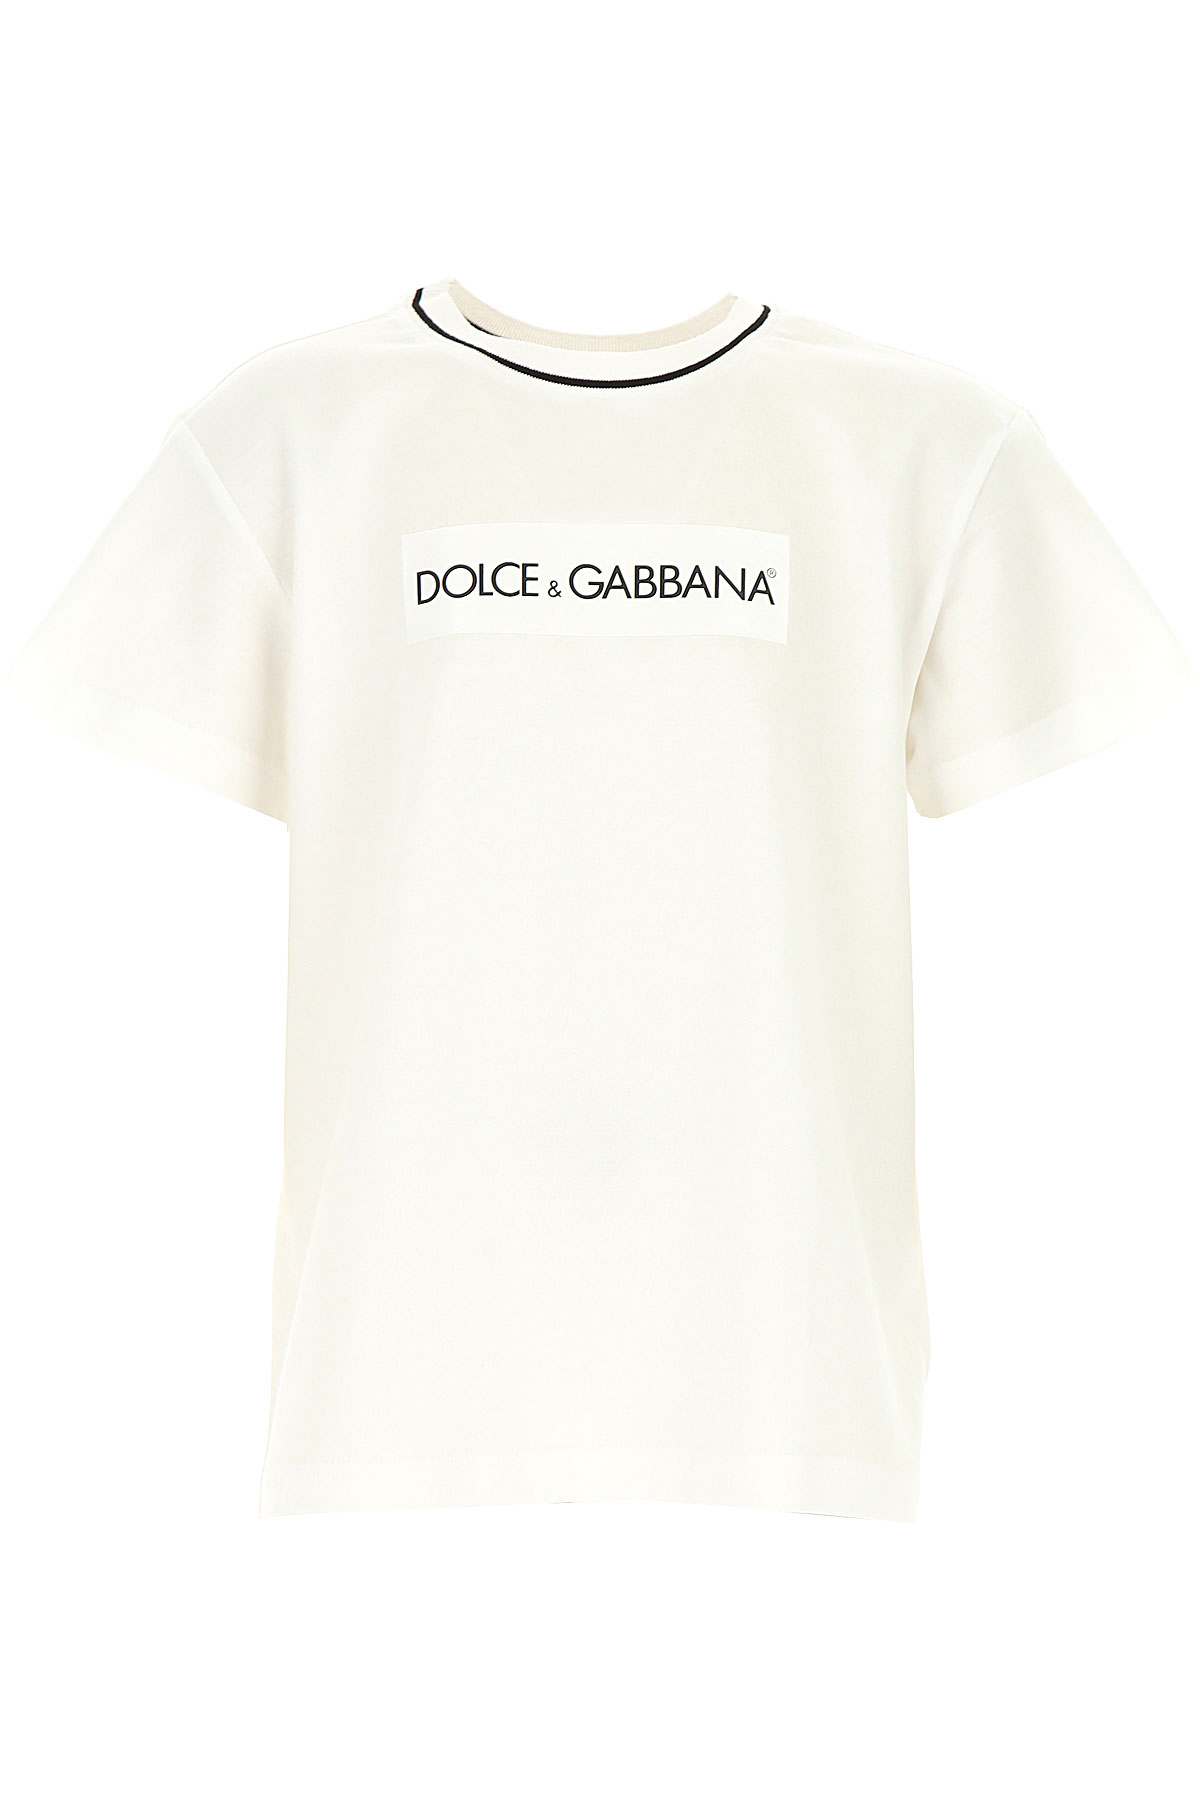 Dolce & Gabbana Kinder T-Shirt für Jungen Günstig im Sale, Weiss, Baumwolle, 2017, 10Y 12Y 3Y 6Y 8Y